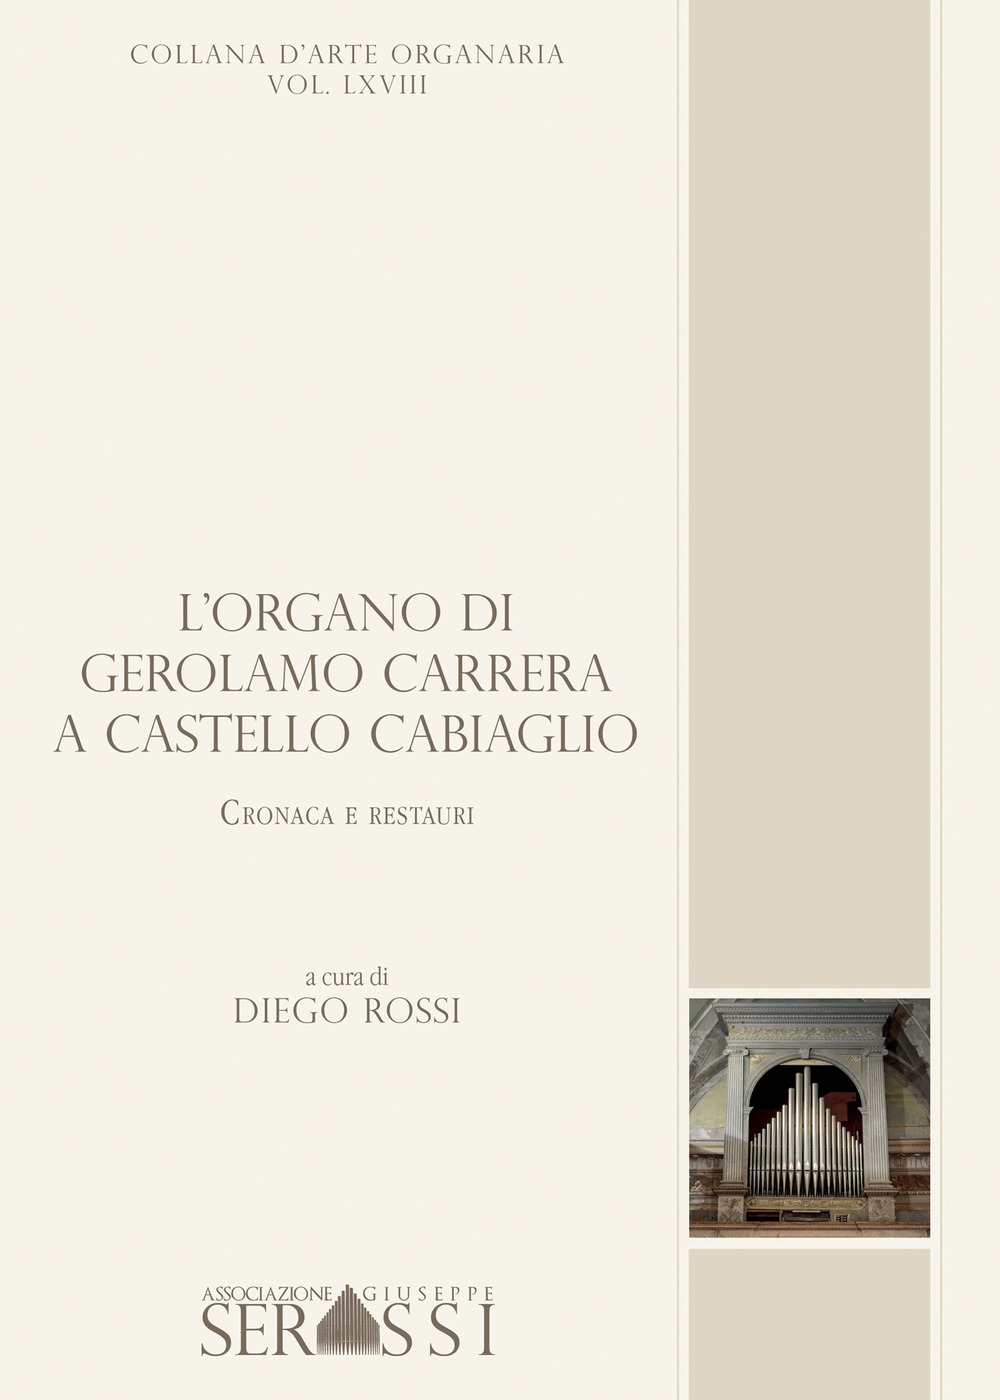 L'organo di Gerolamo Carrera a Castello Cabiaglio. Cronaca e restauri